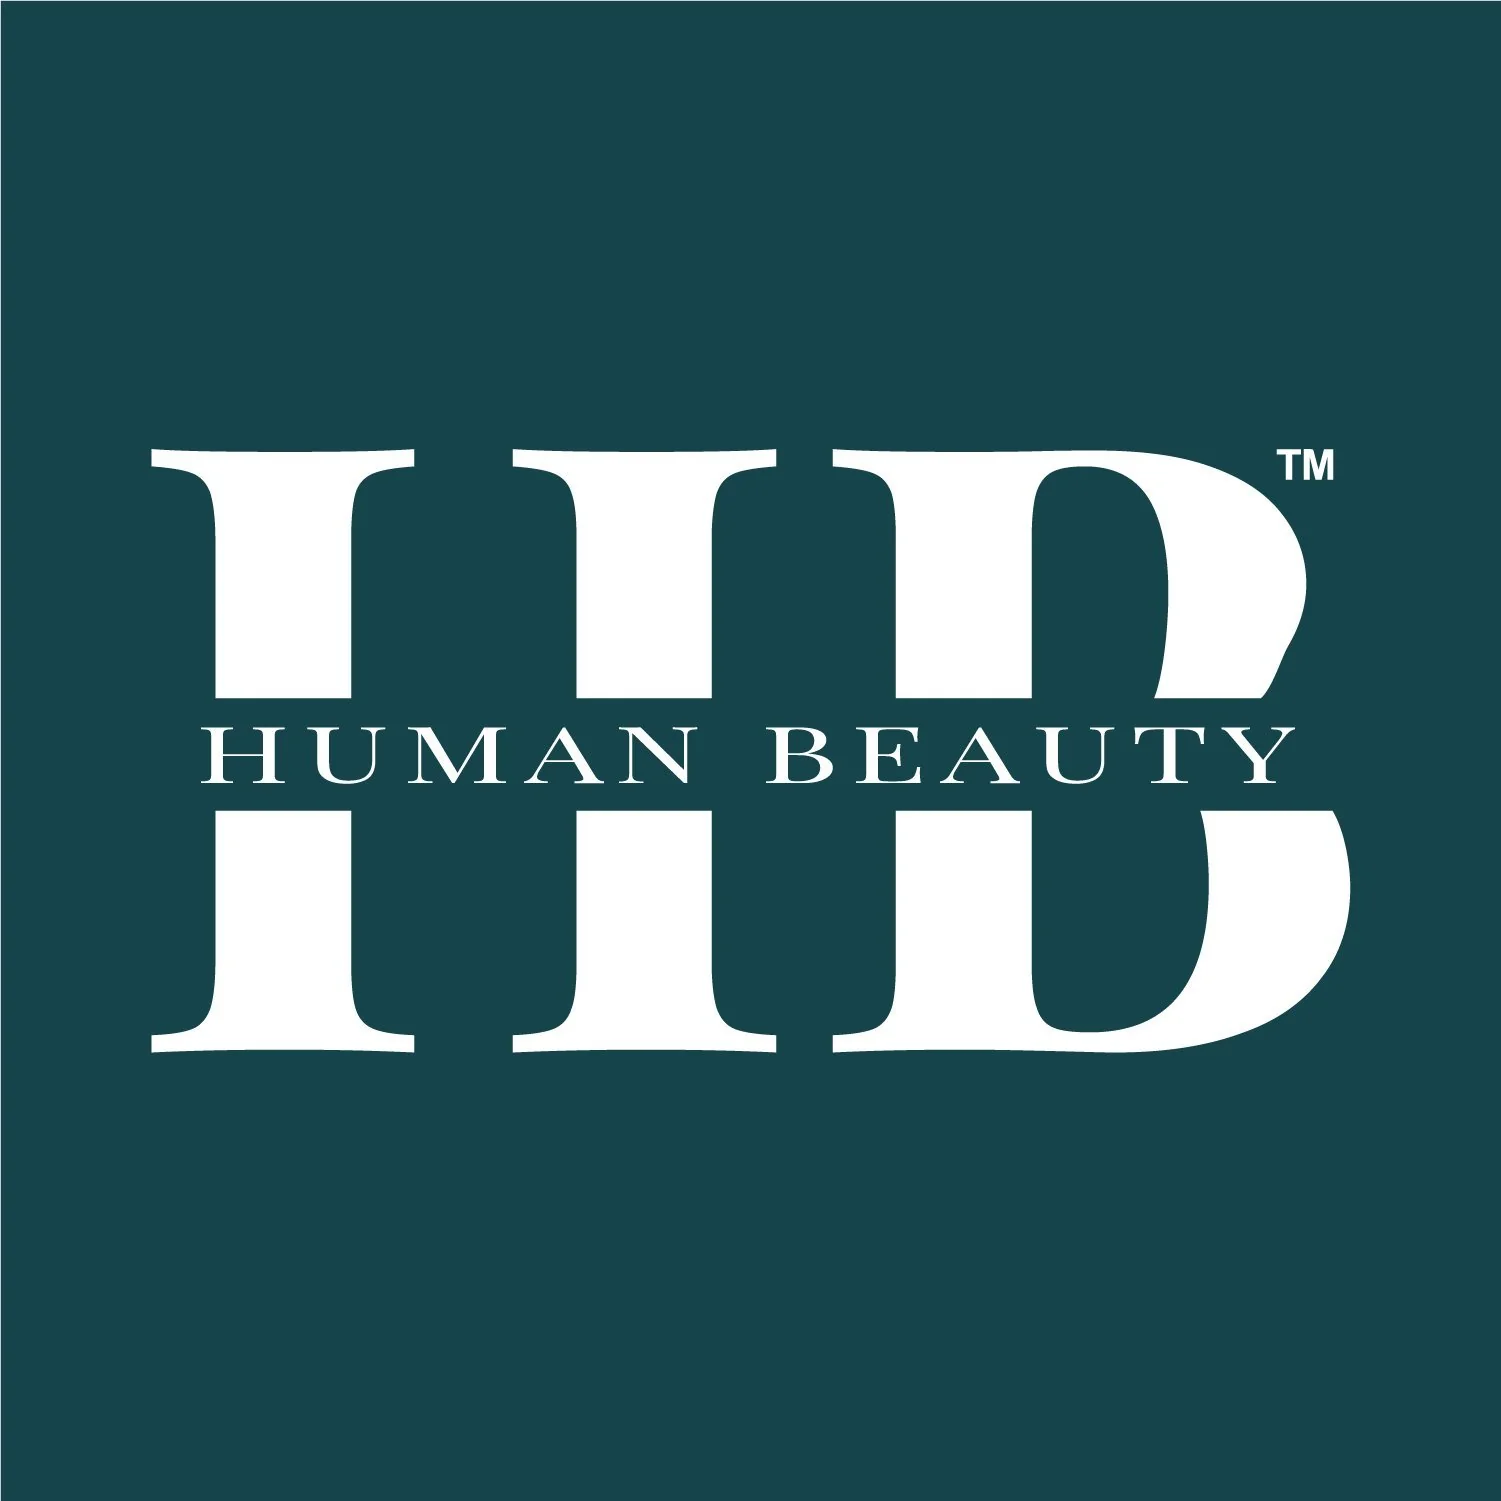 Human Beauty